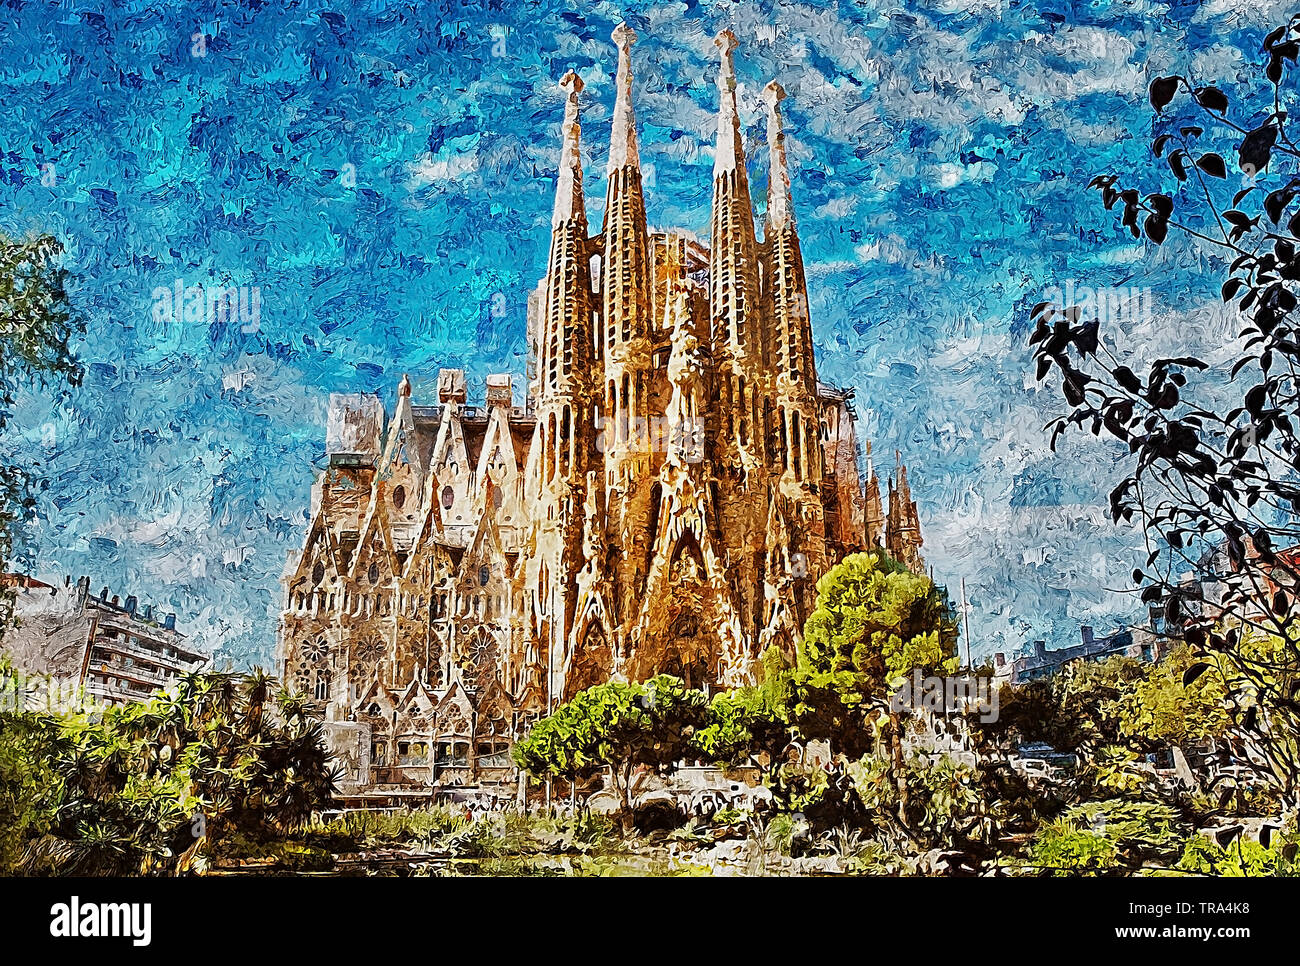 La Sagrada Familia de Barcelona. Una gran basílica católica obra maestra del arquitecto Antoni Gaudí, el máximo exponente del modernismo catalán. Foto de stock